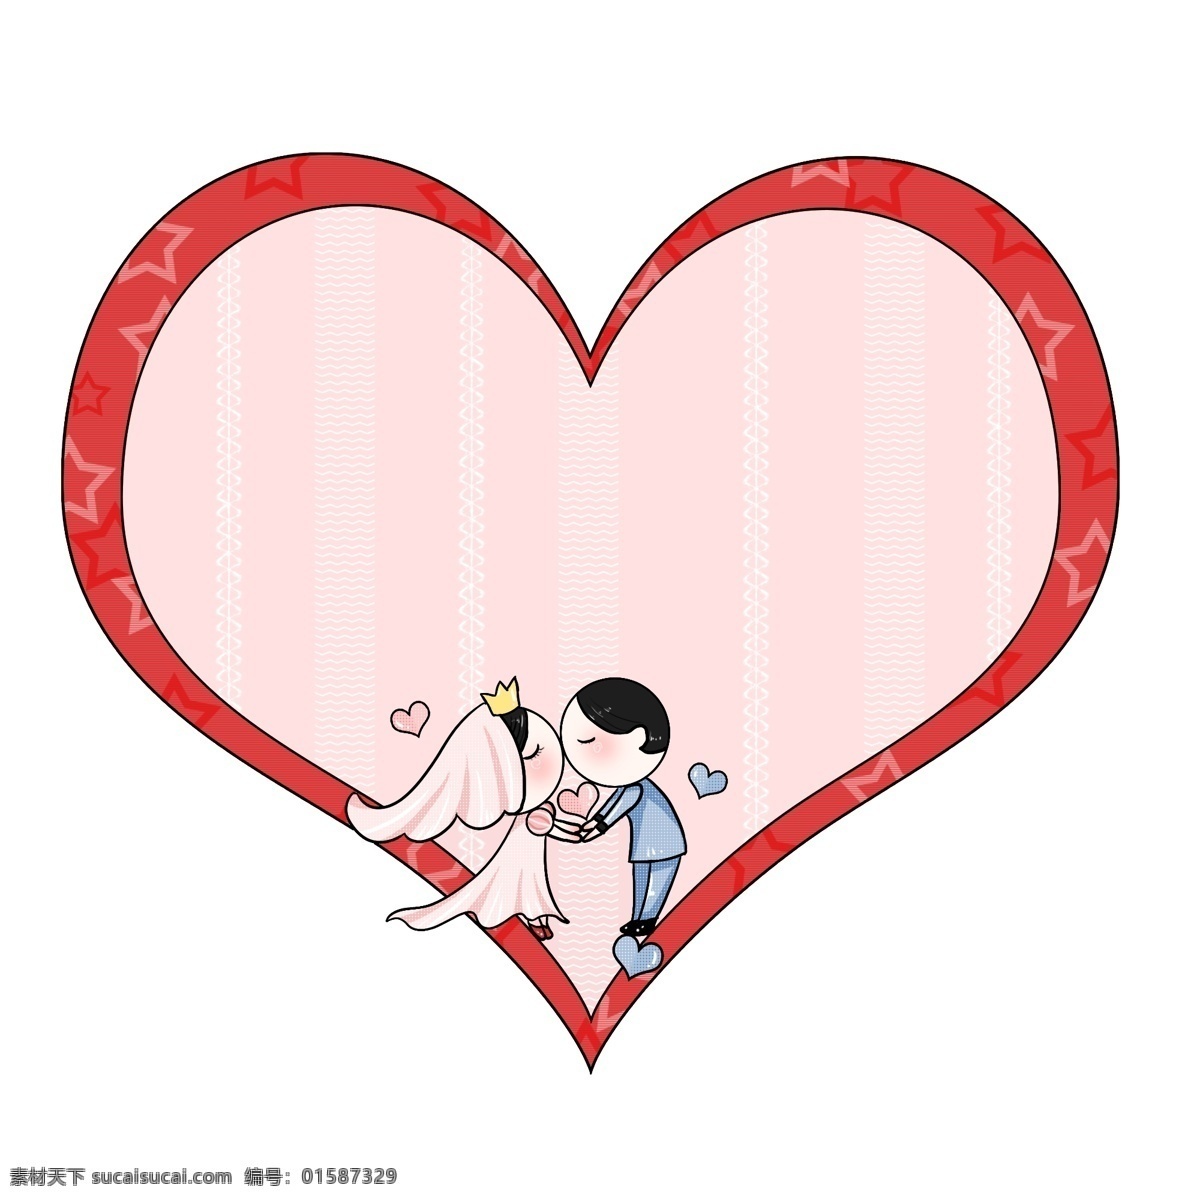 幸福 爱情 心形 边框 插画 幸福爱情 爱心 小人 框框 爱情插画 心形边框 爱情边框 唯美边框 爱情信物 边框插画